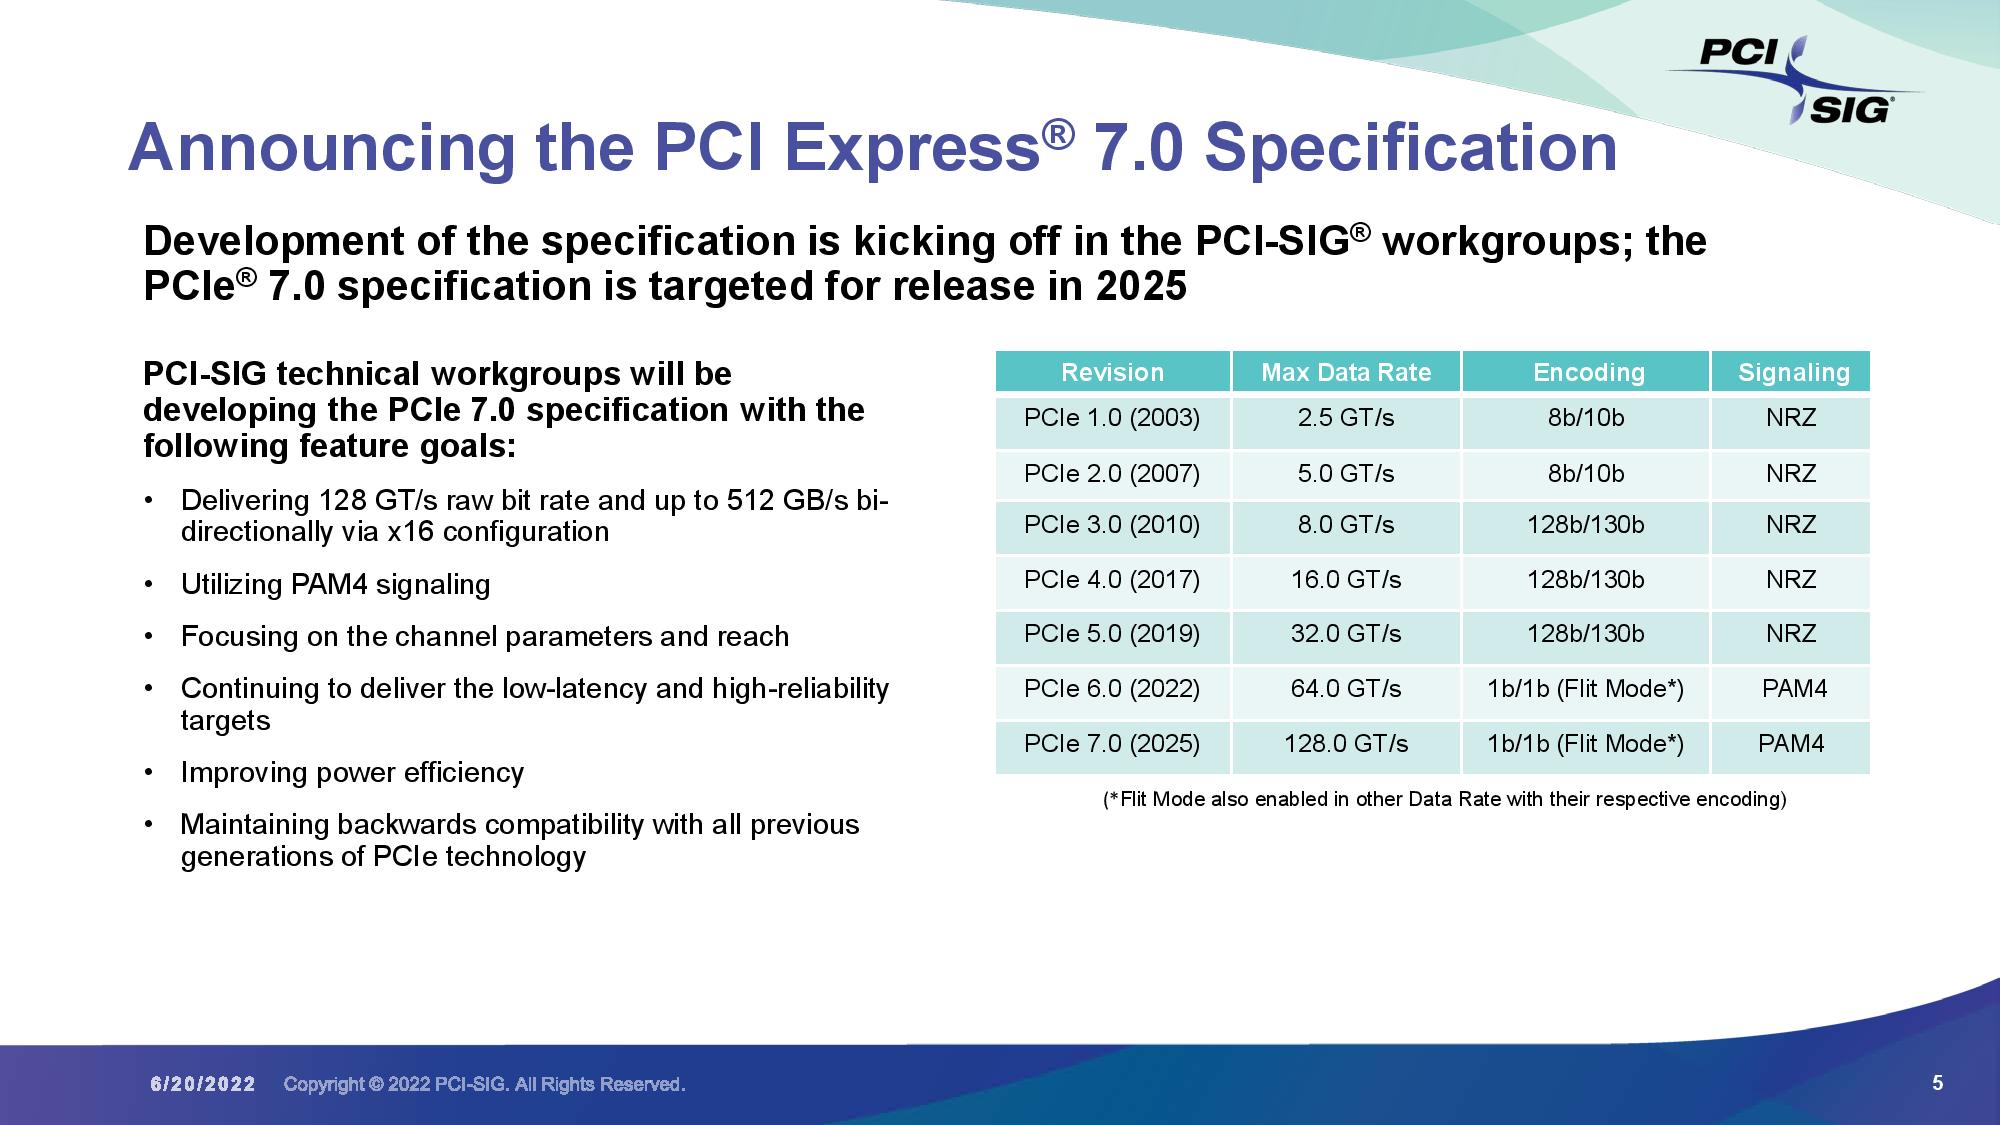 Standard PCI Express 7.0 już w 2025 roku